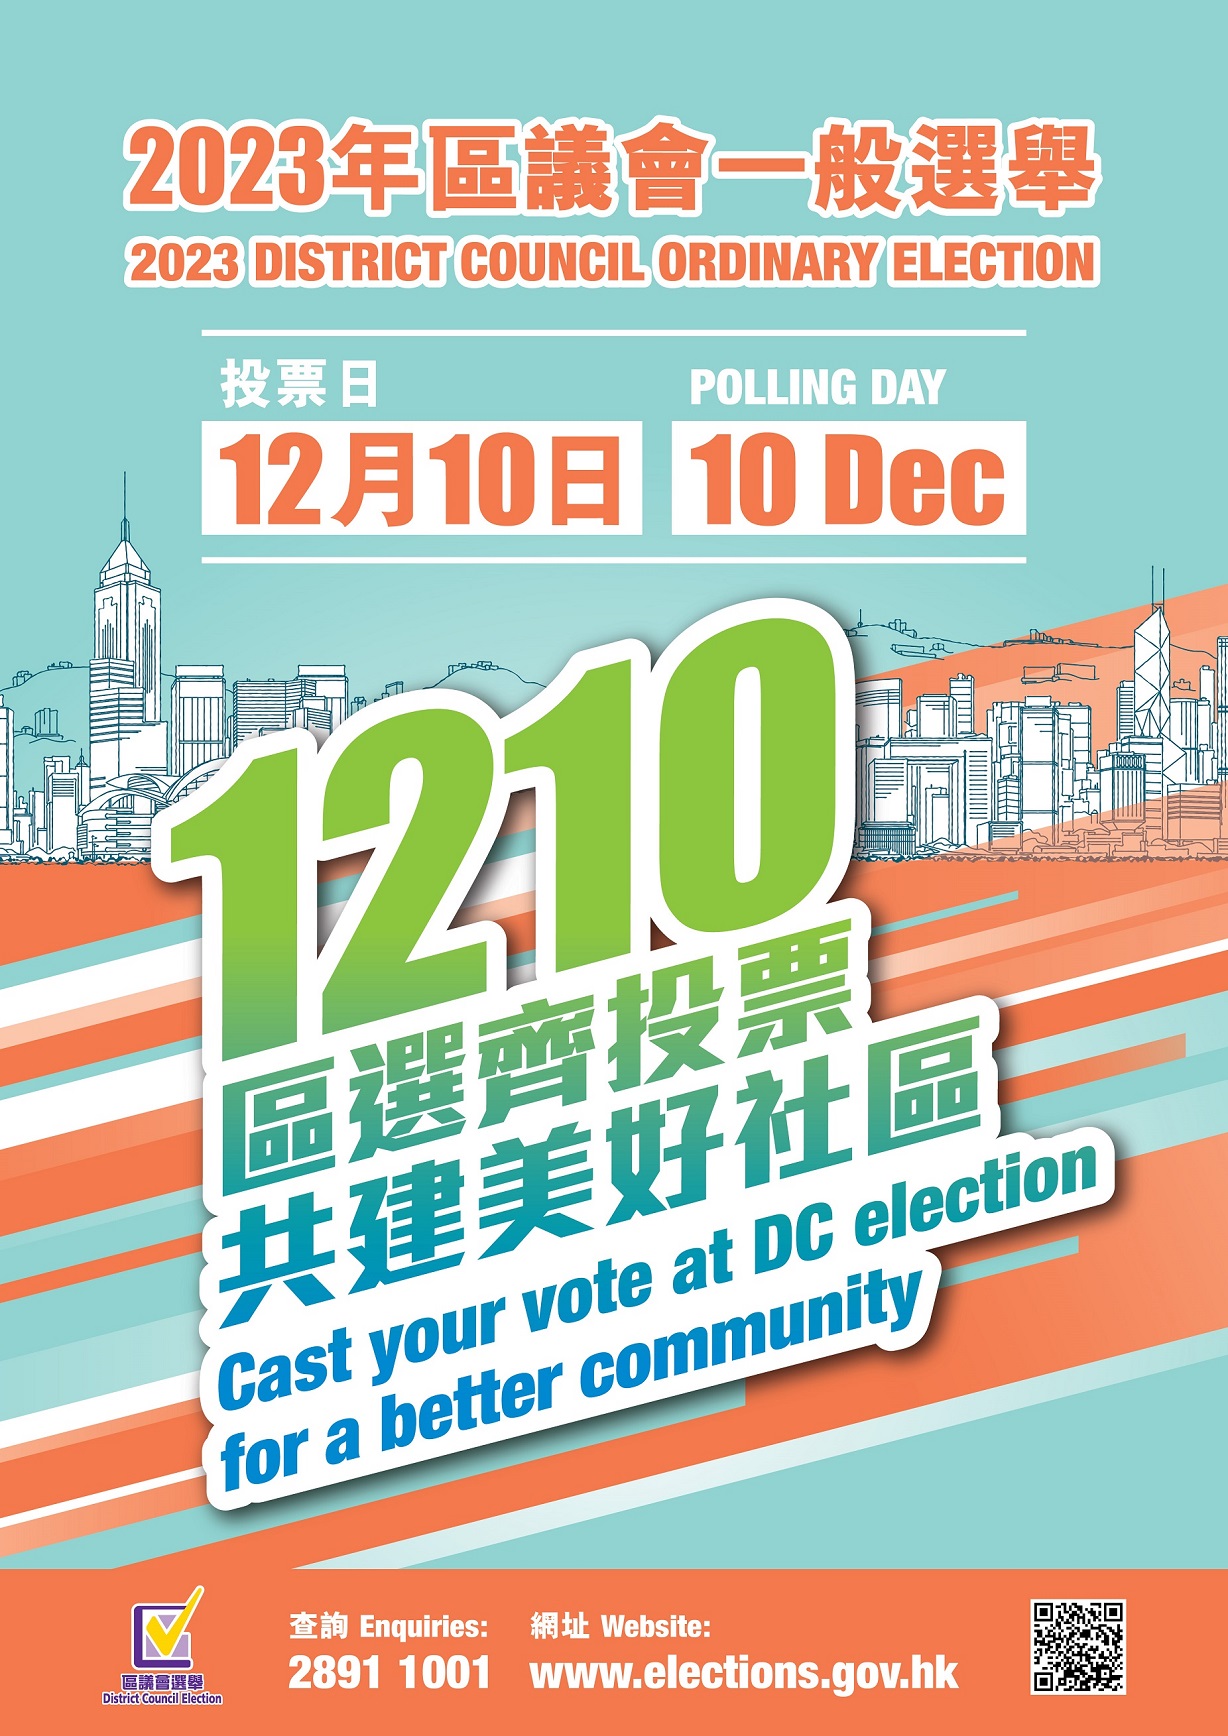 2023年区议会一般选举-投票日